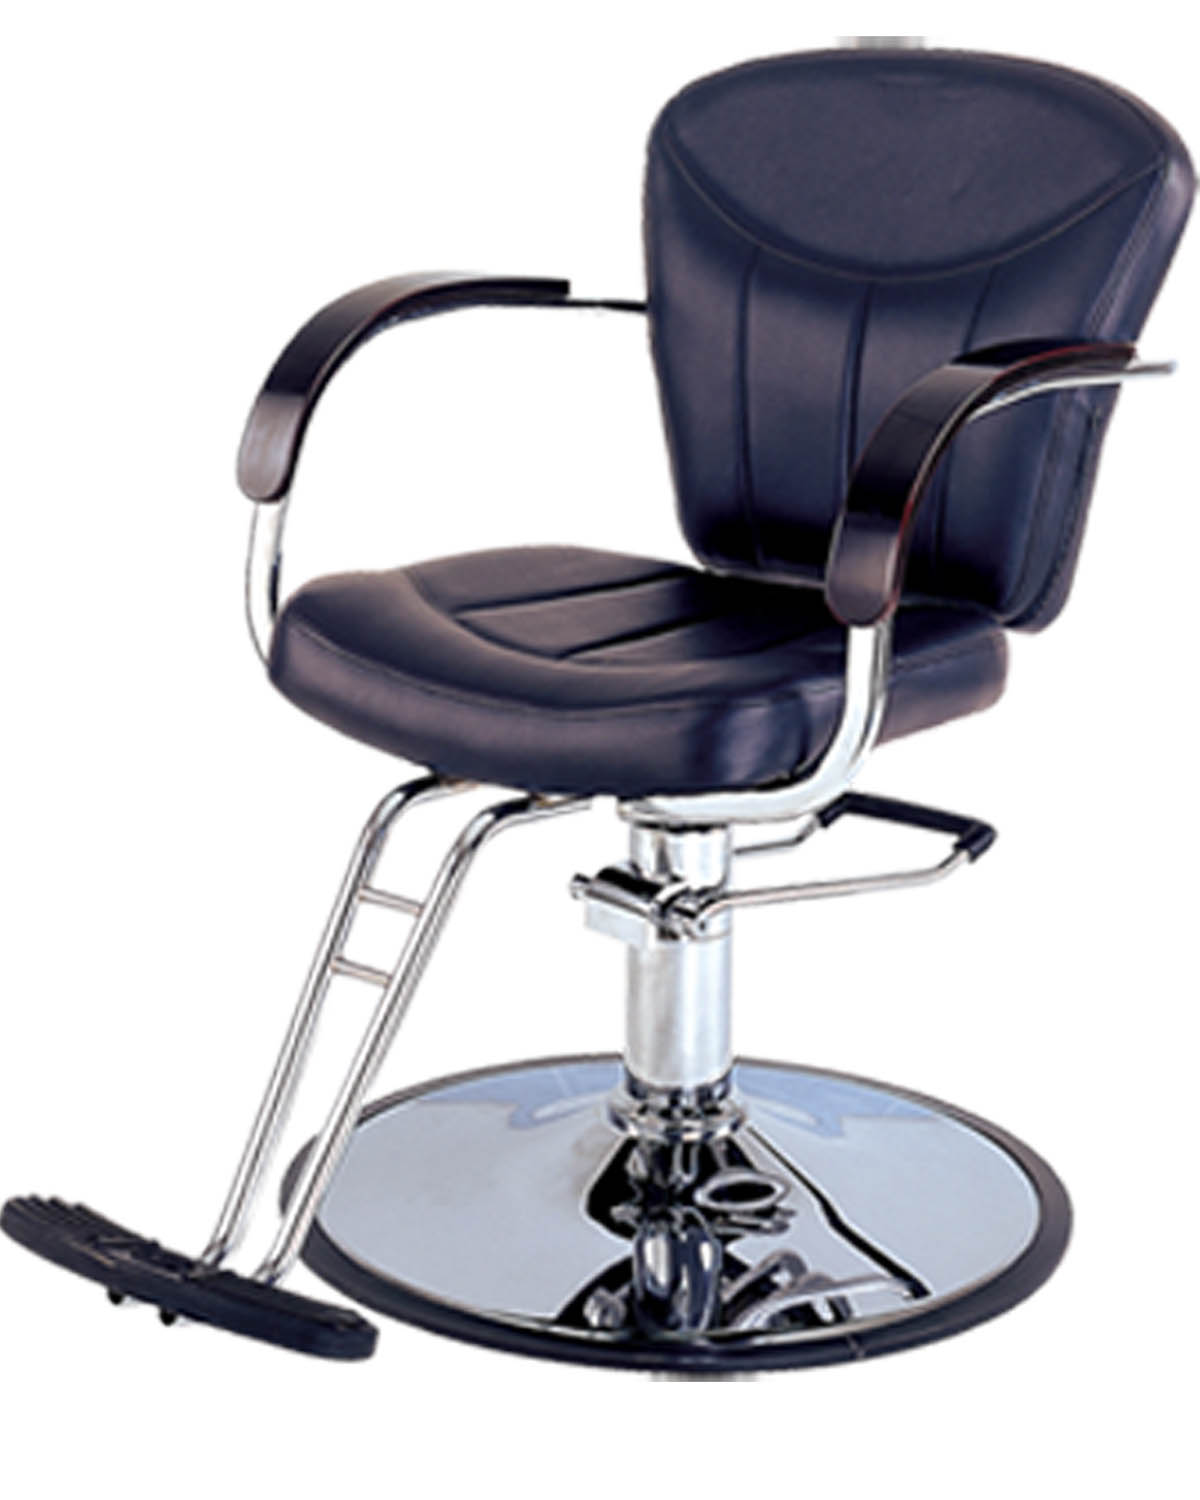 Hair Salon Chair Clipart